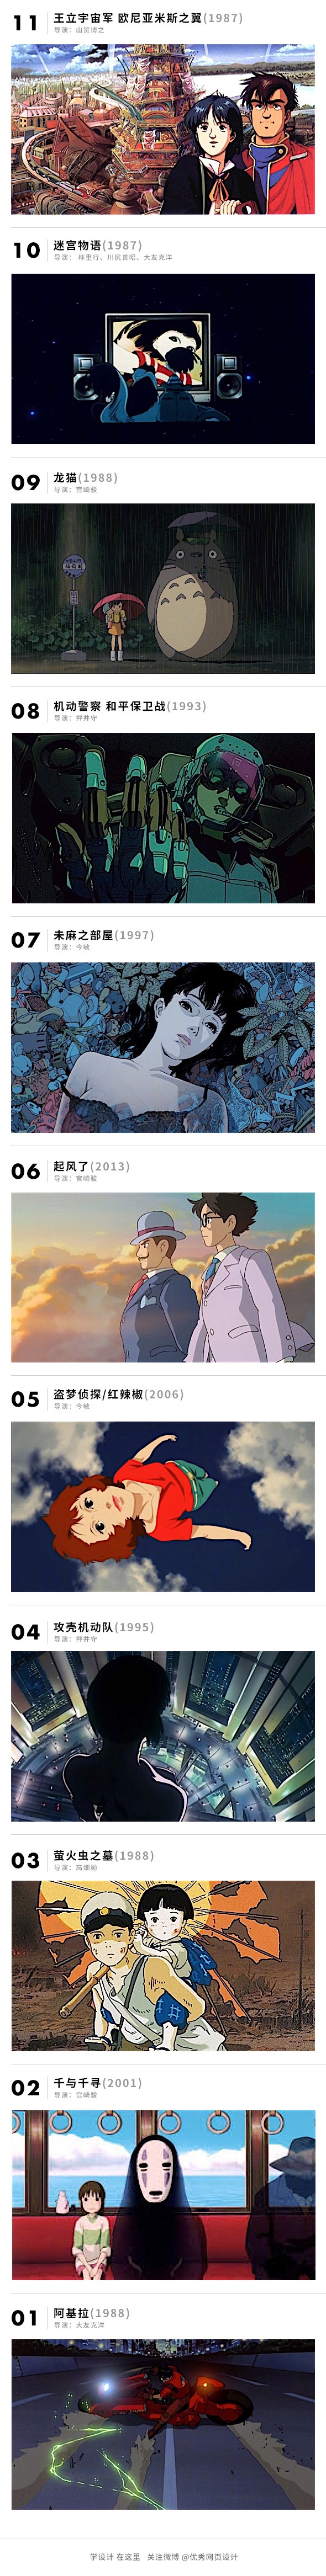 100部最好的日本动画电影